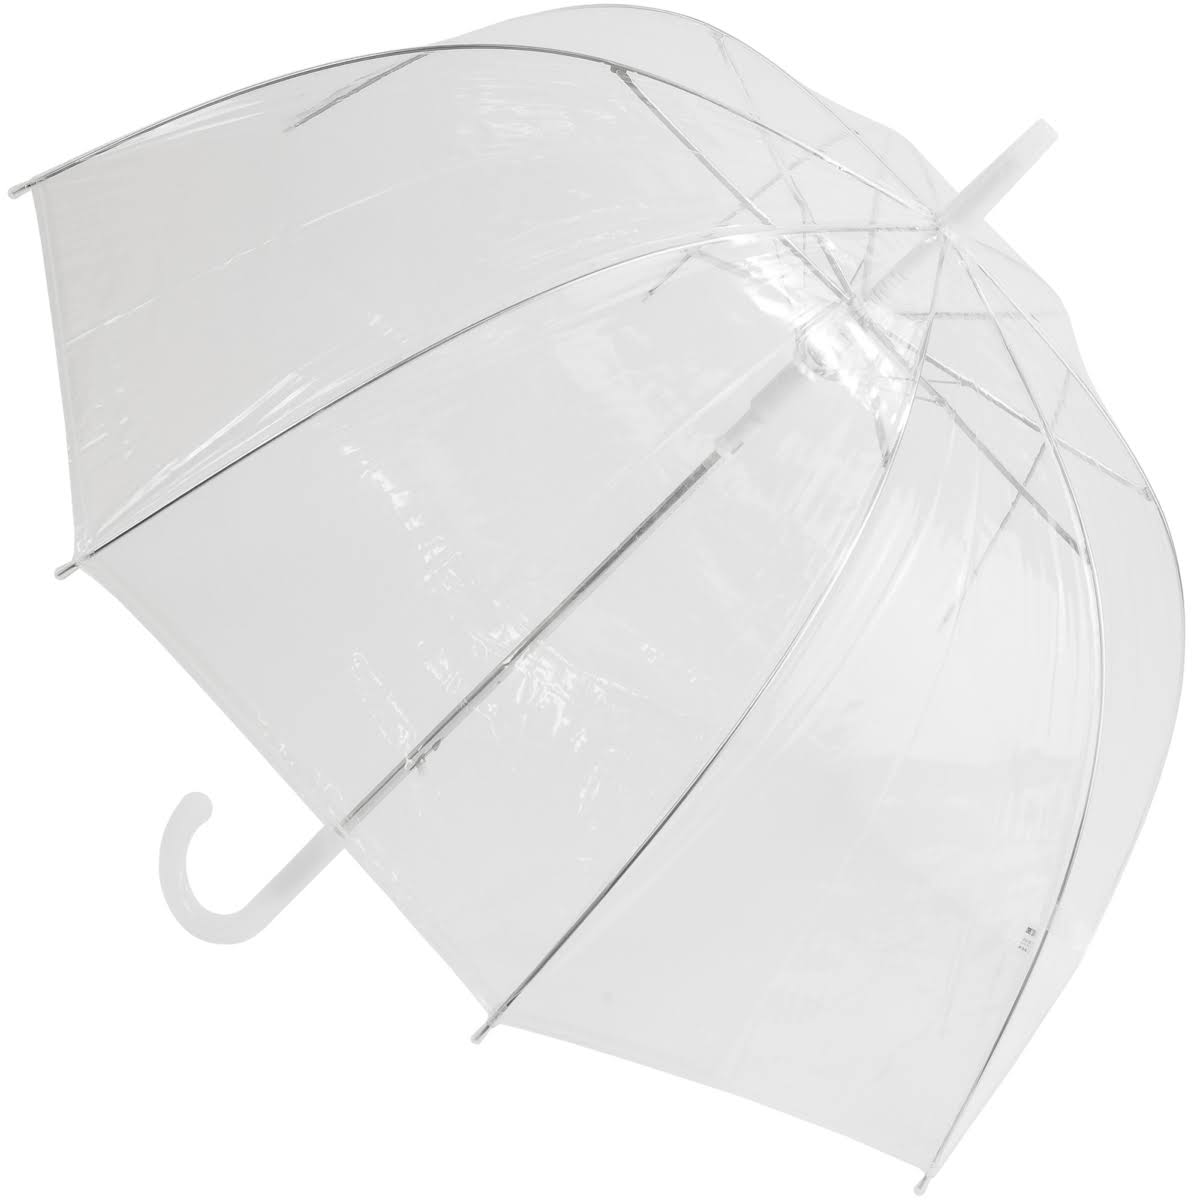 Susino Crystal Clear Dome Umbrella